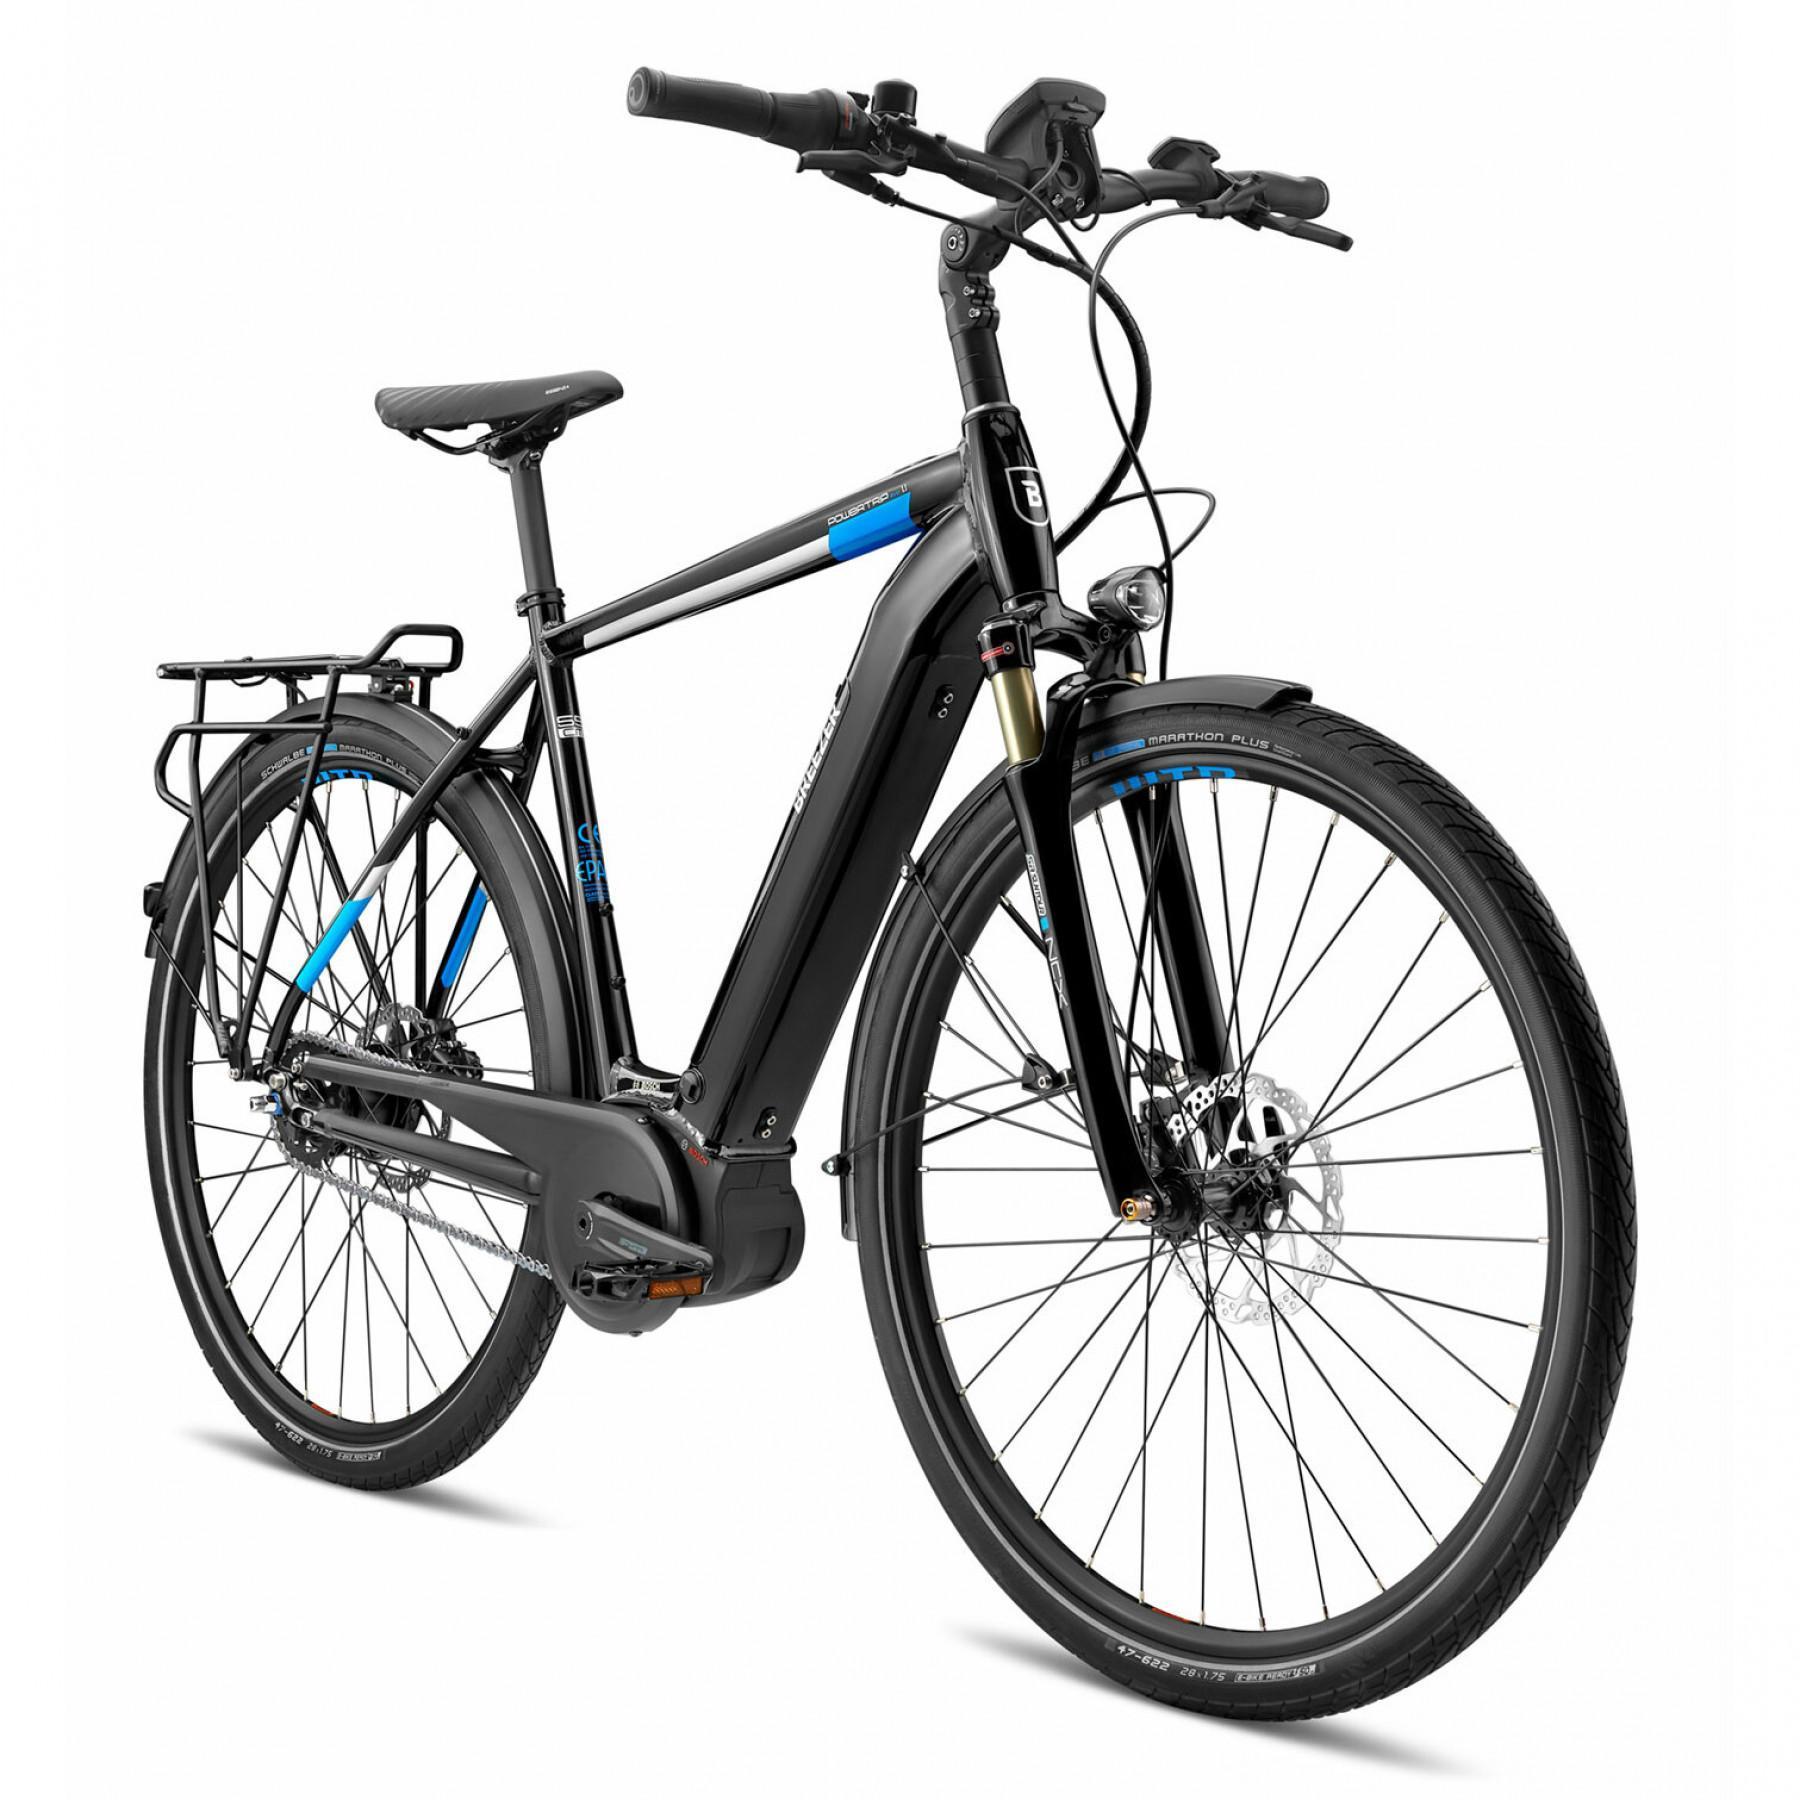 Bicicleta eléctrica Breezer Powertrip Evo IG 1.1+ 2020